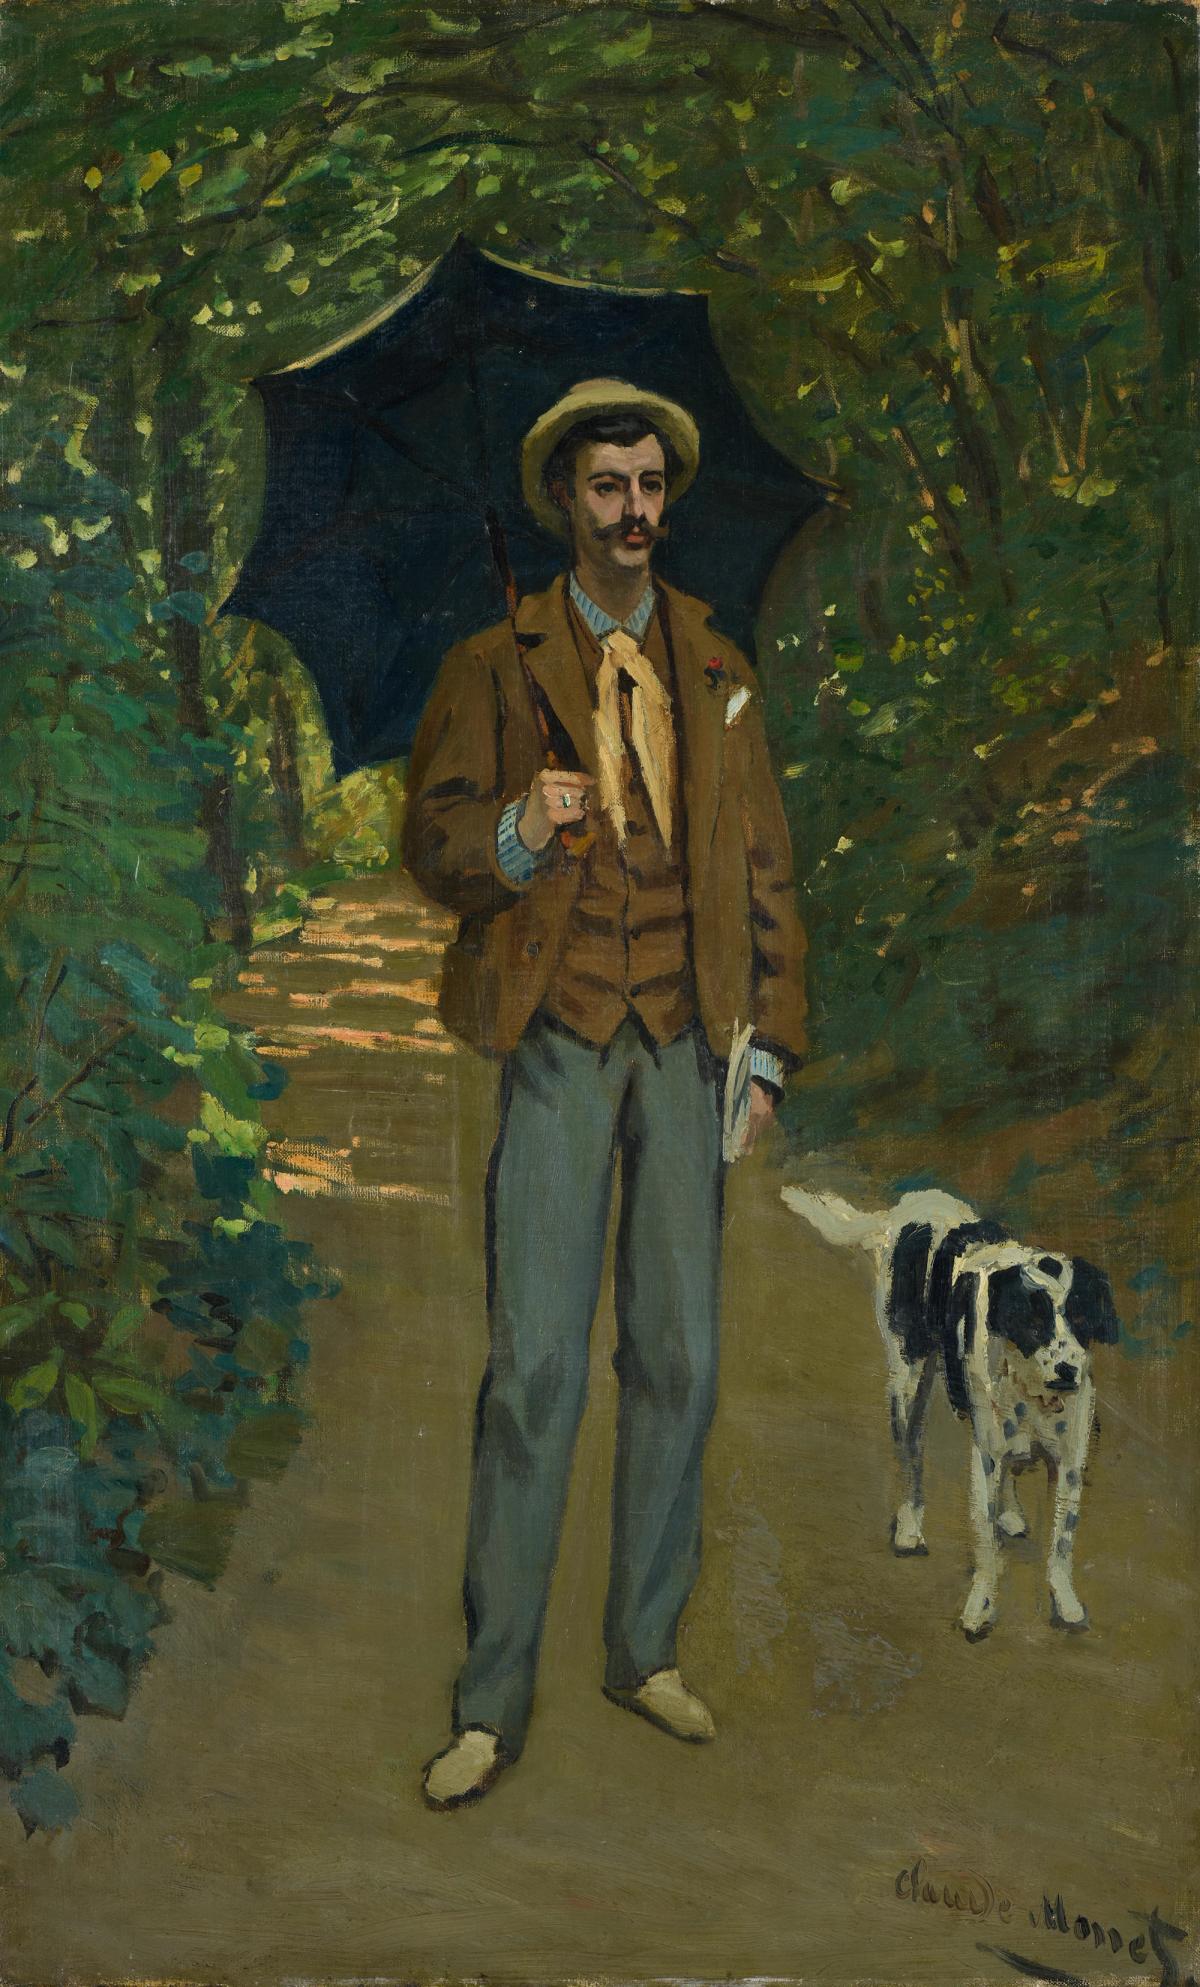 Claude Monet, L’Hommeà l’ombrelle (1865-67) Image: Kunsthaus Zürich